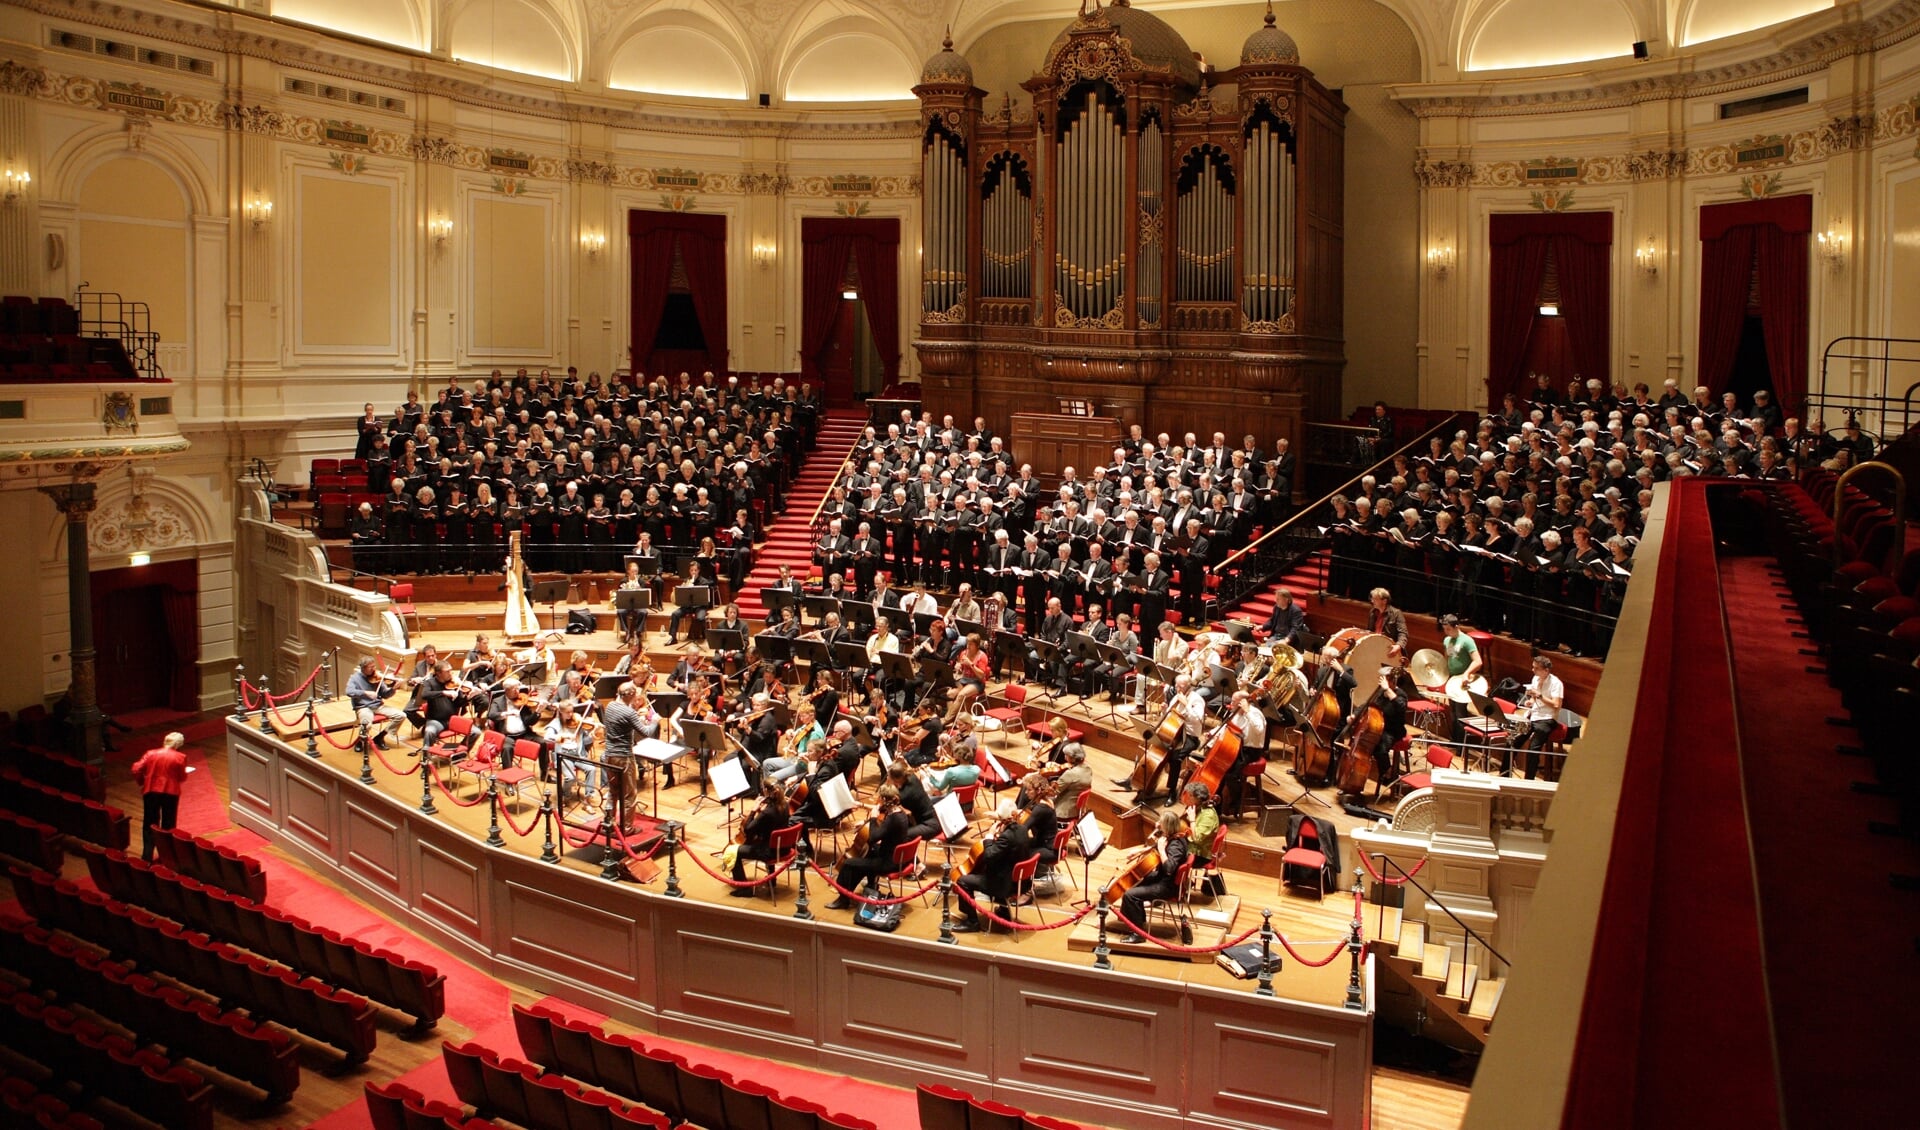 Het Oratoriumkoor treedt op met een voltallig orkest in vroegere tijden.